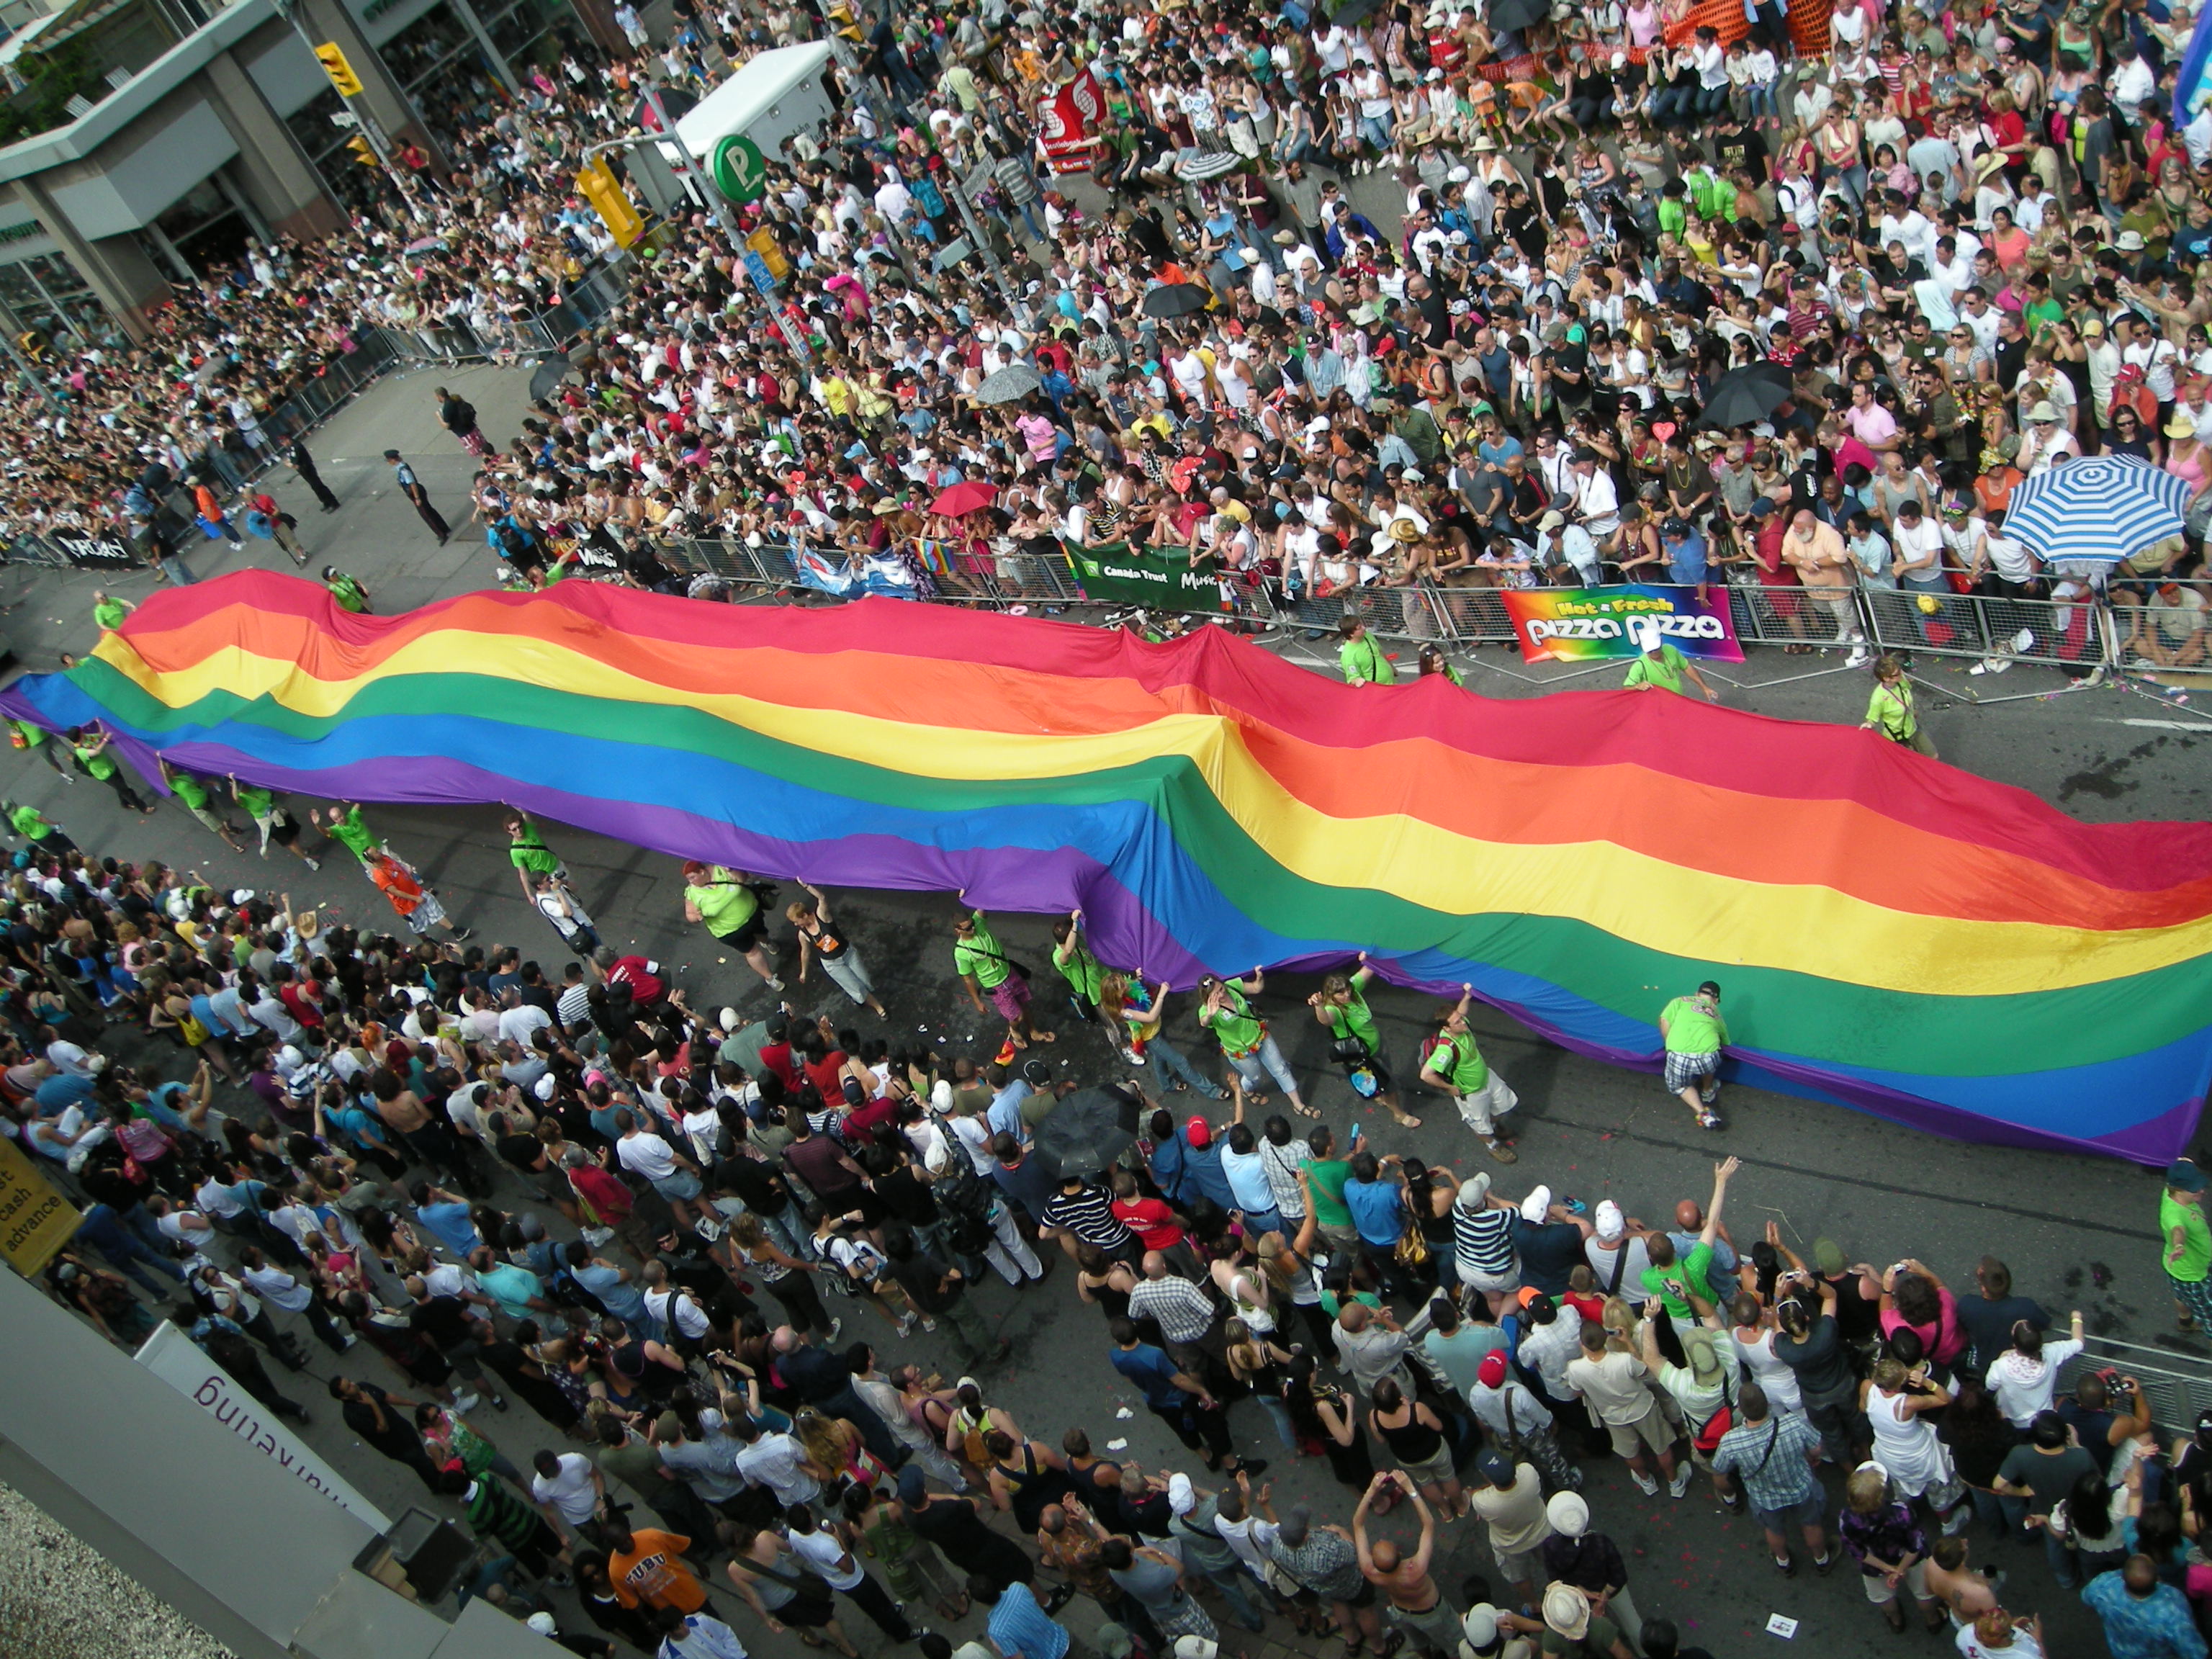 Totonto Pride 2008 - Quelle: wikicommons